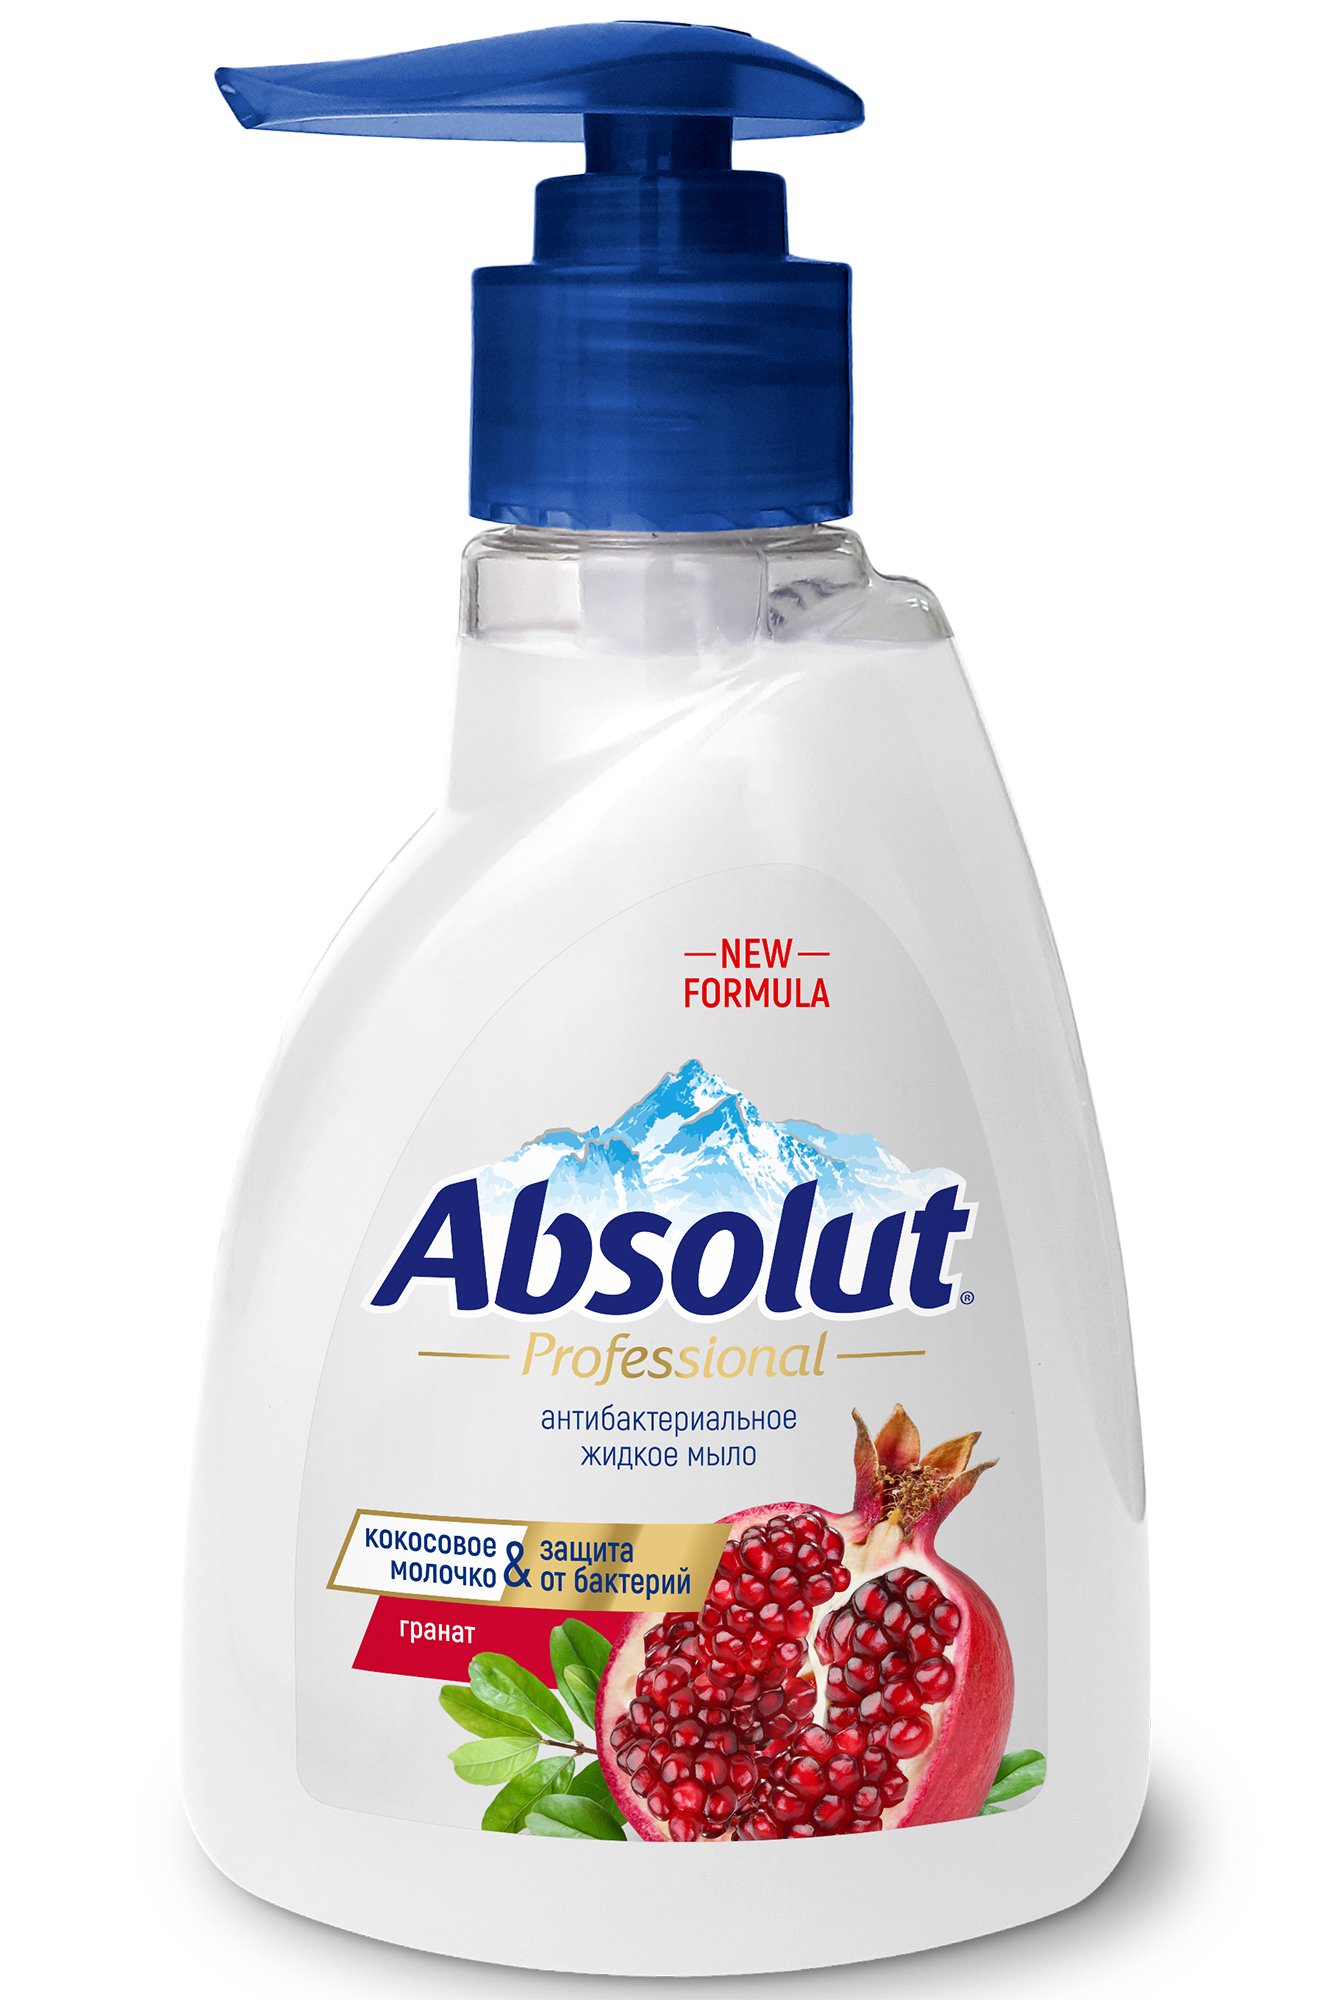 Мыло жидкое Absolut Professional антибактериальное, гранат, 250 г